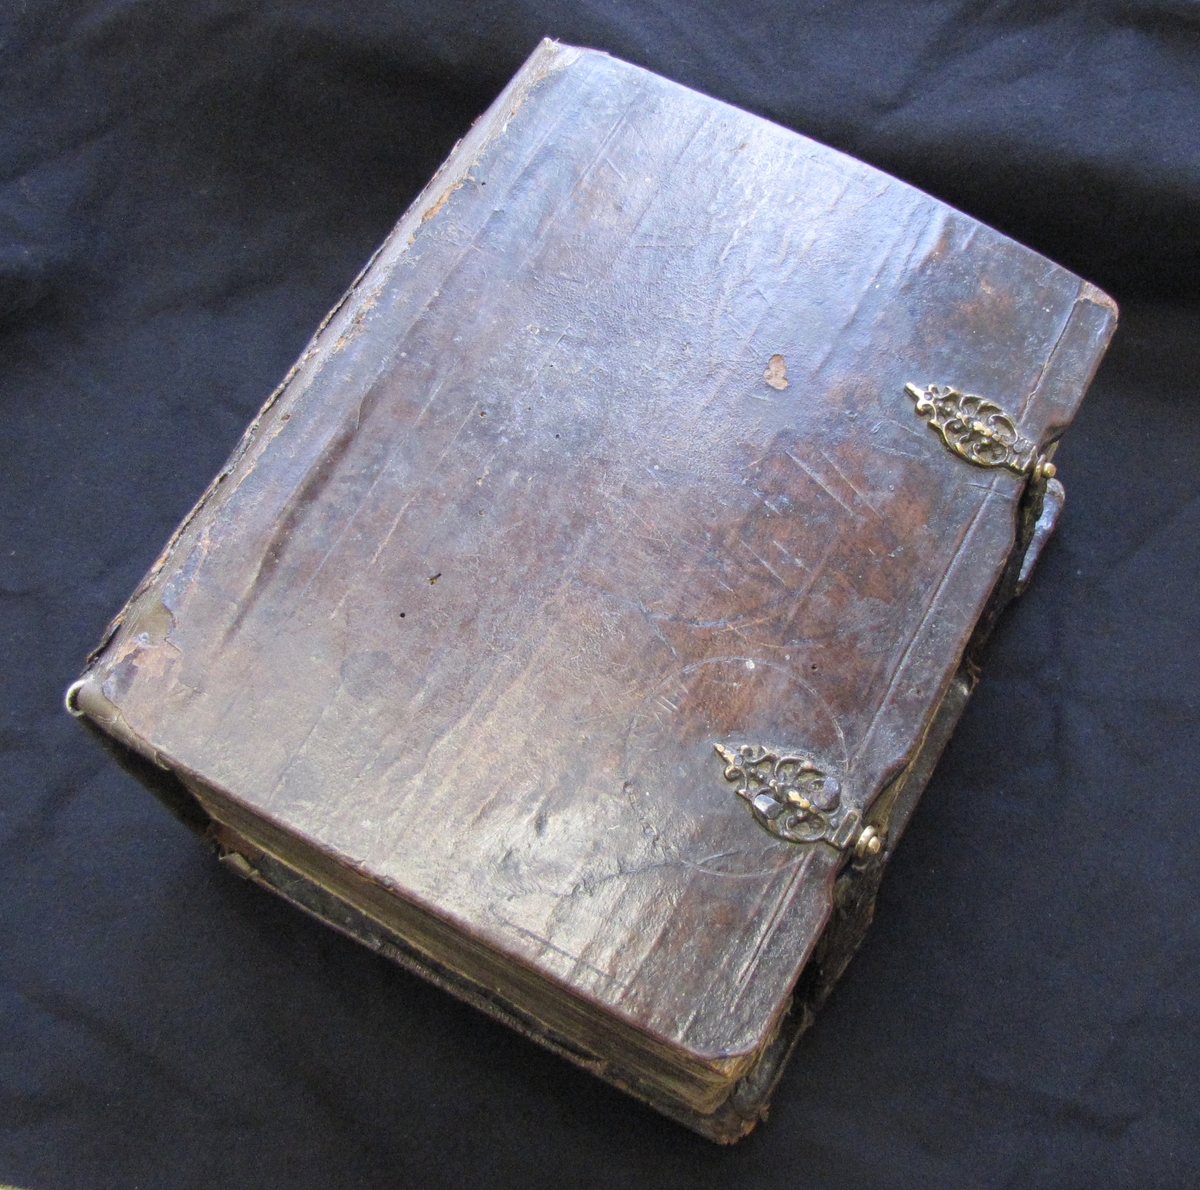 Karl XIIs fältbibel. Träpärmar med läderklädsel. Spännen i mässing. 

De första sidorna saknas i bibeln.